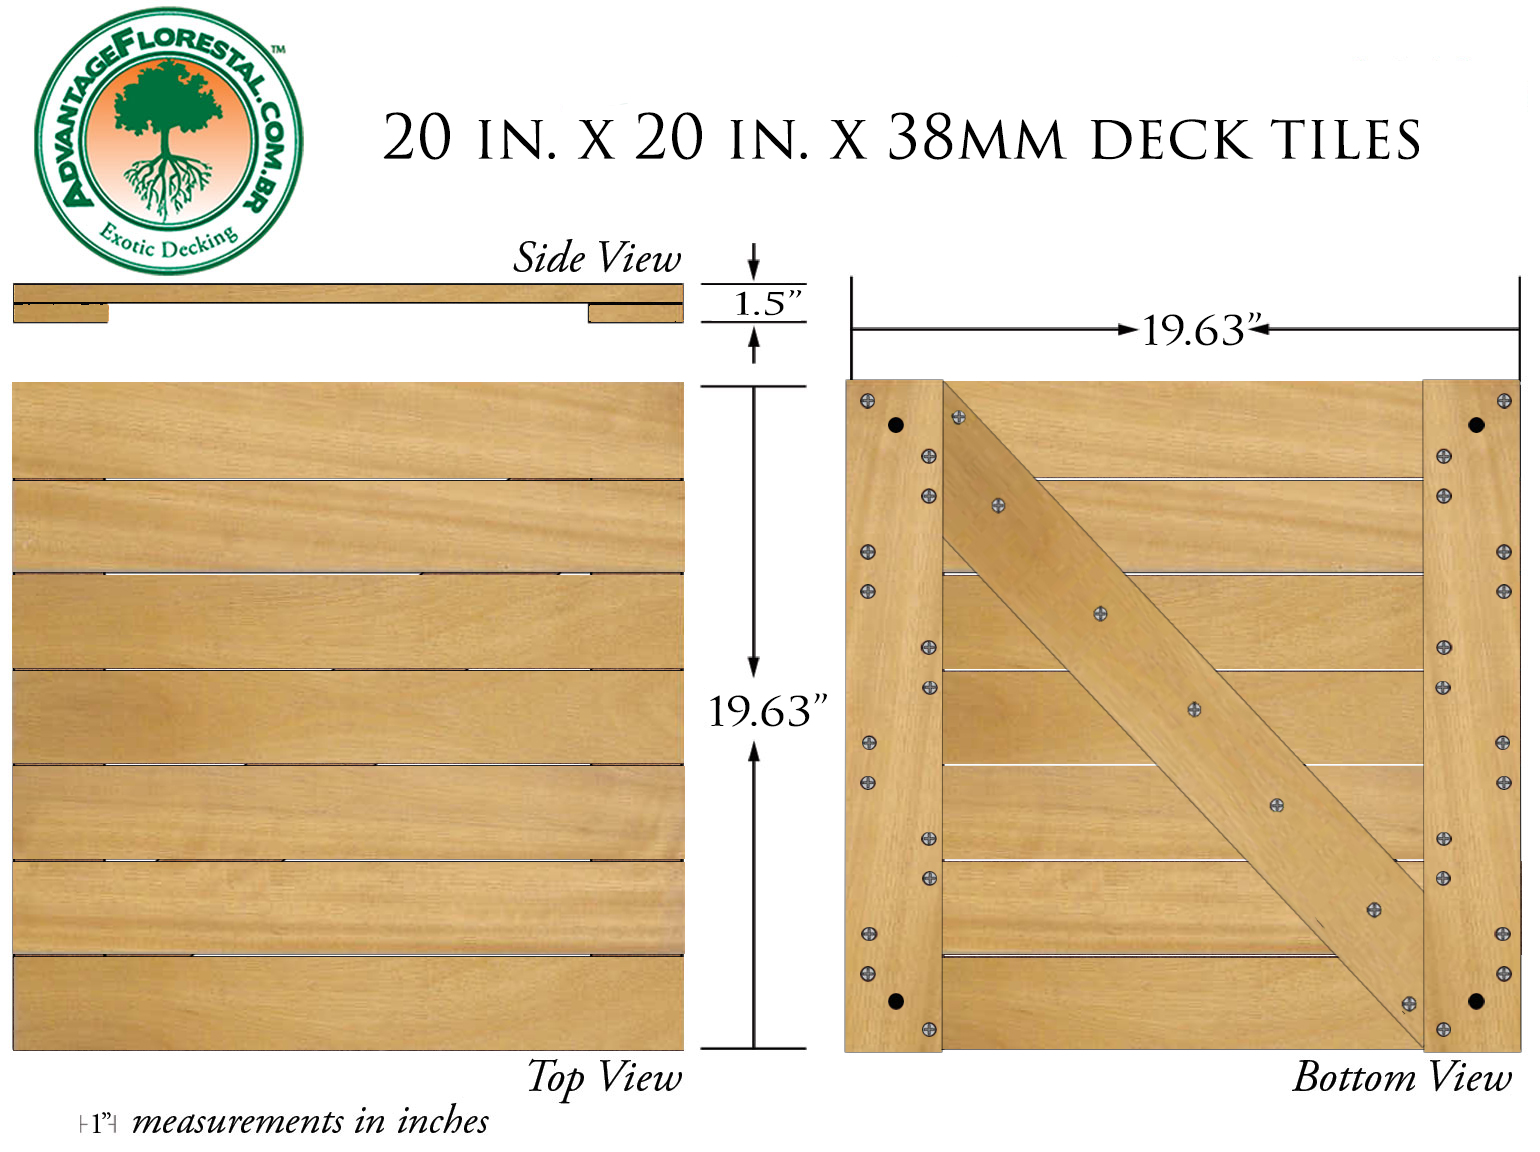 Tatajuba Deck Tile 20 in. x 20 in. x 38mm